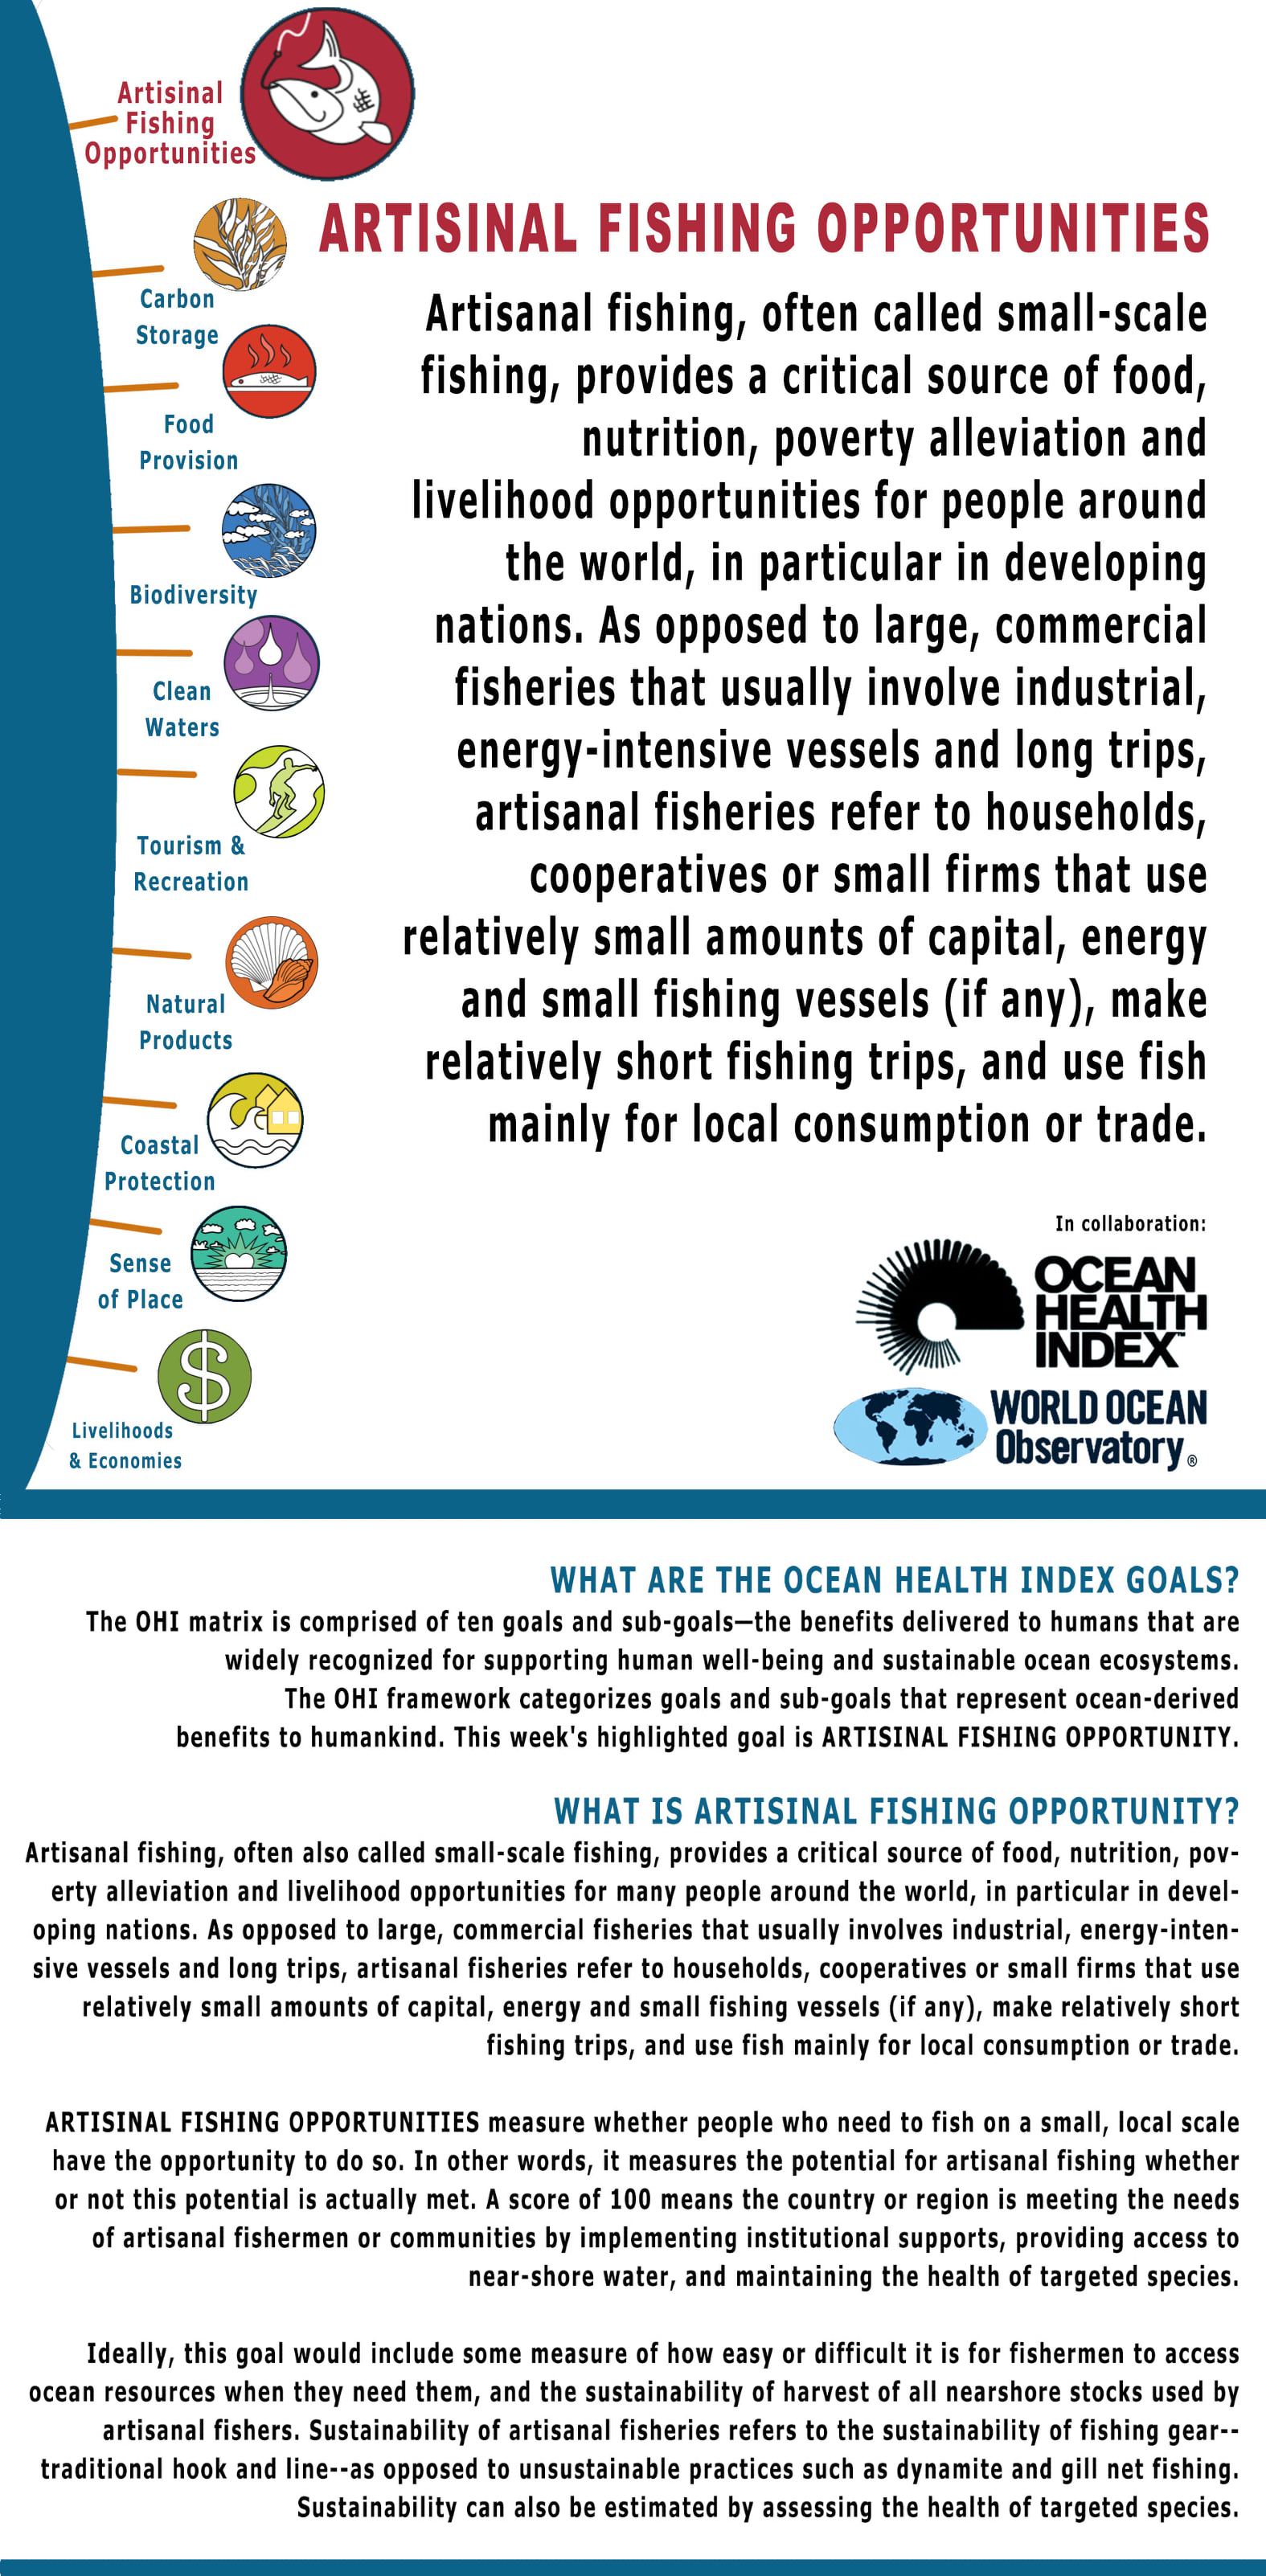 Goal: Artisanal Fishing Opportunities